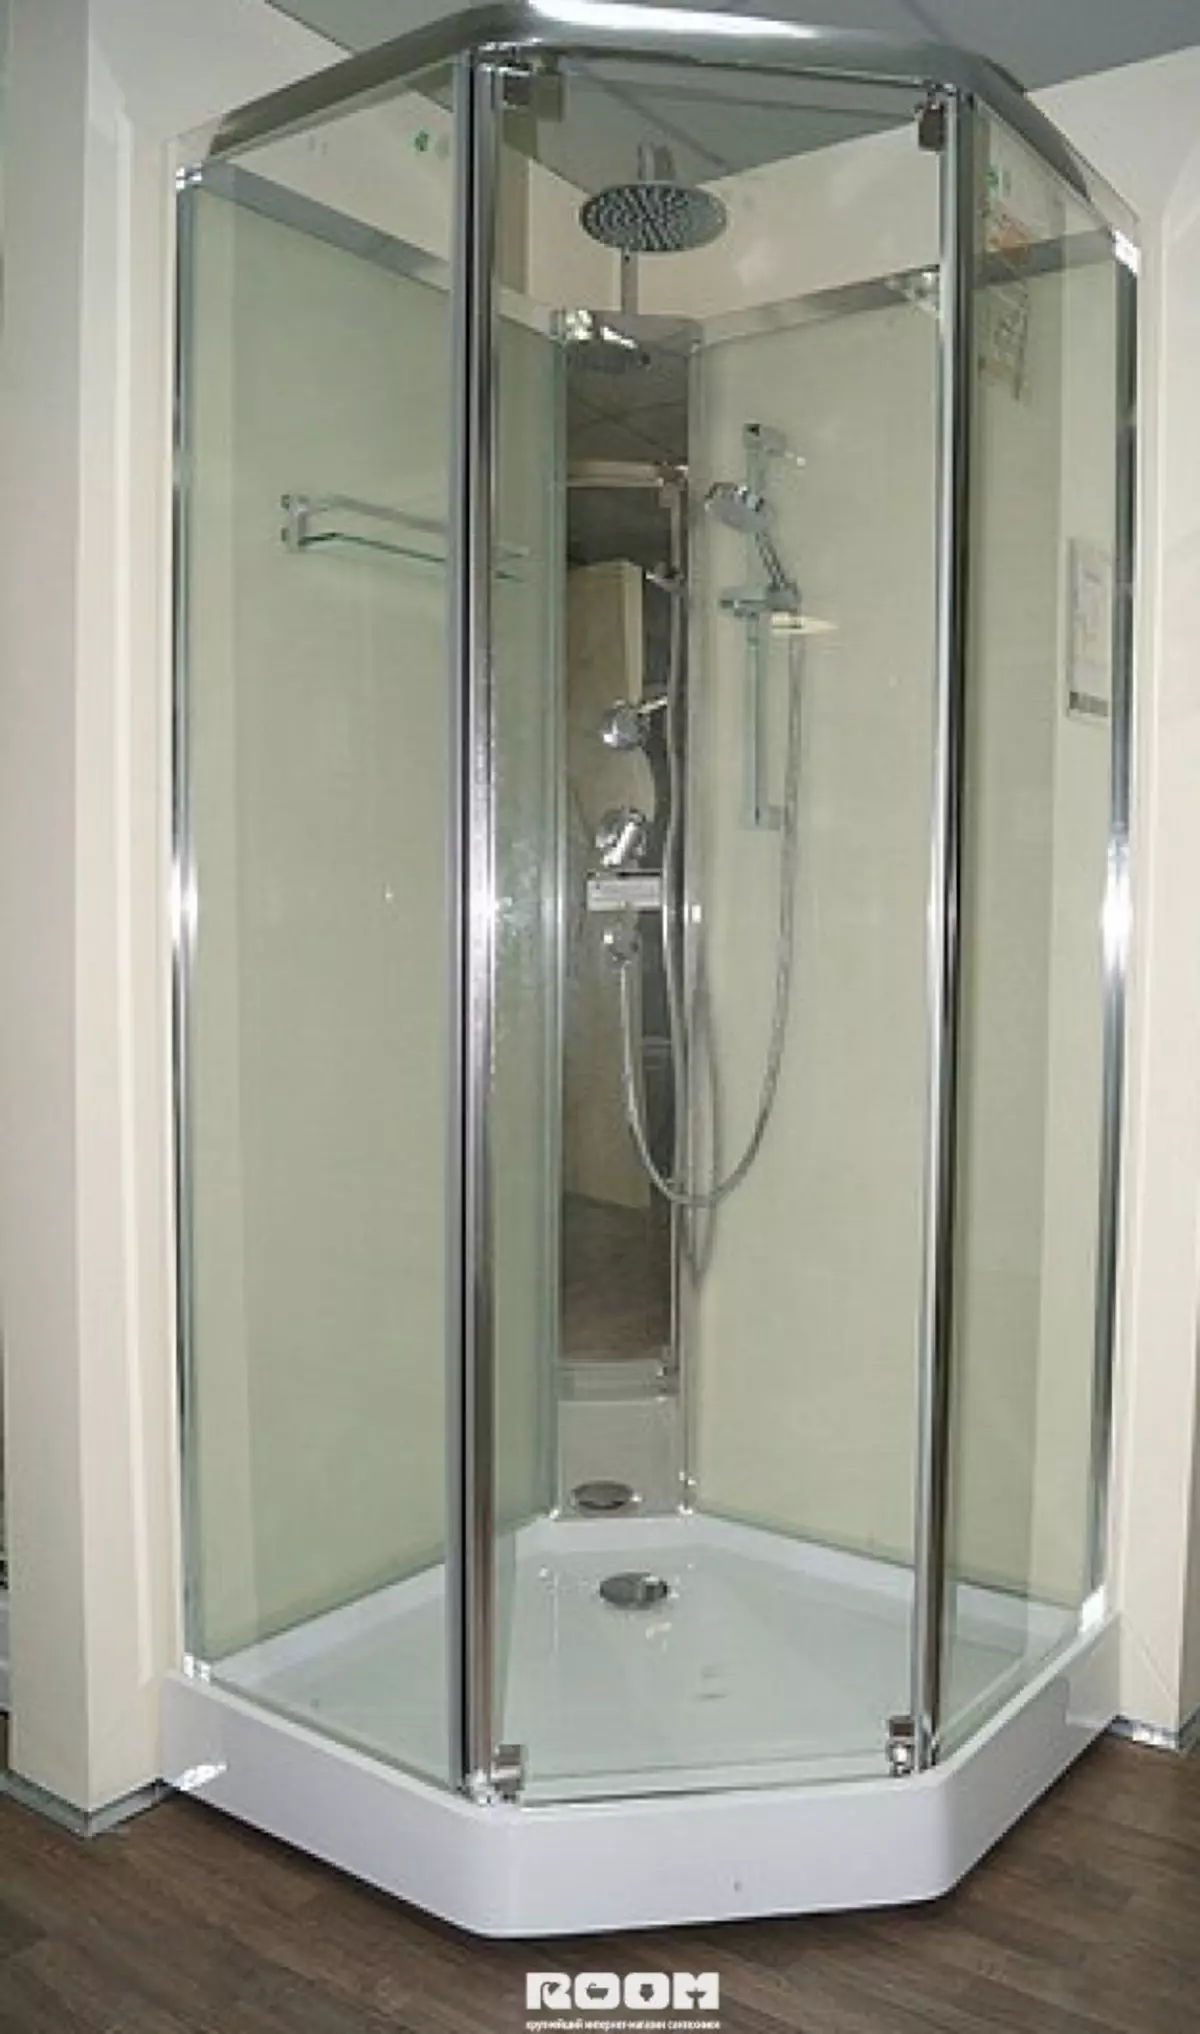 Cabina de dutxa Appollo: cabina de pis amb un bany i altres models. Els seus avantatges i desavantatges. Com triar una cabina? 10338_15